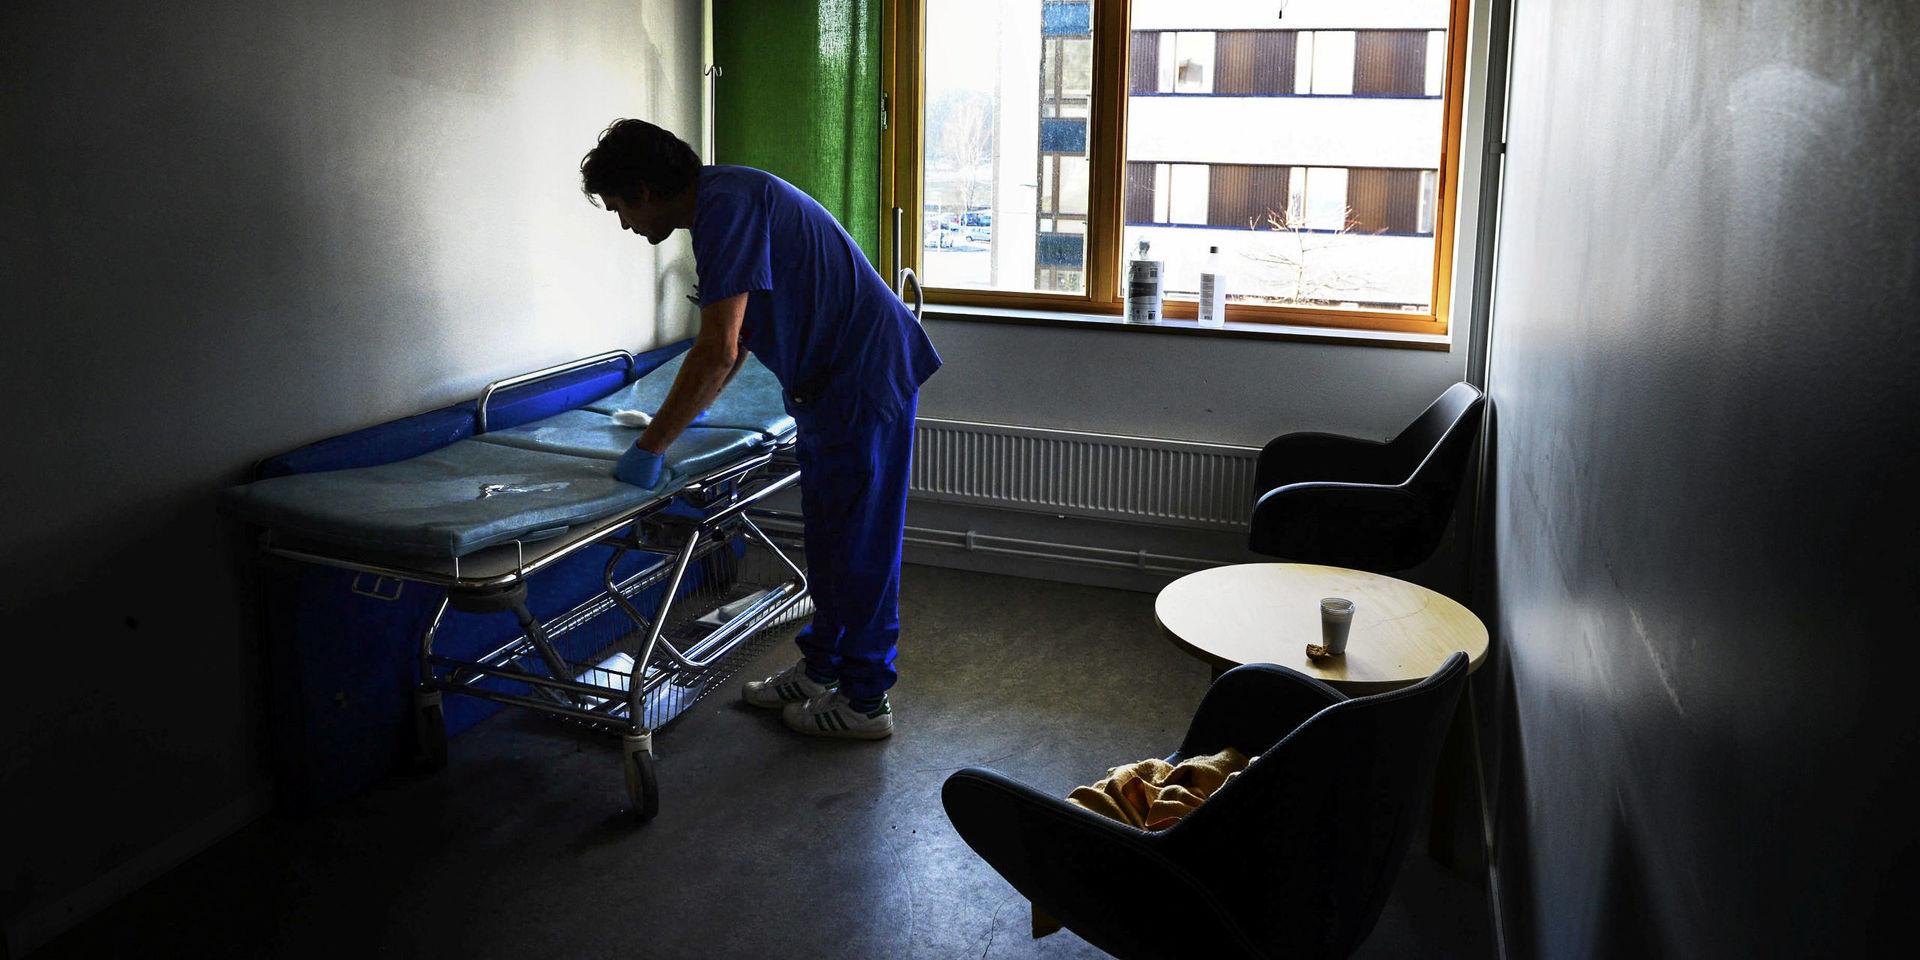 Sahlgrenska universitetssjukhusets psykiatriska akutmottagning finns en våning upp hos Östra sjukhuset. De tar emot i snitt 37 personer per dygn. 